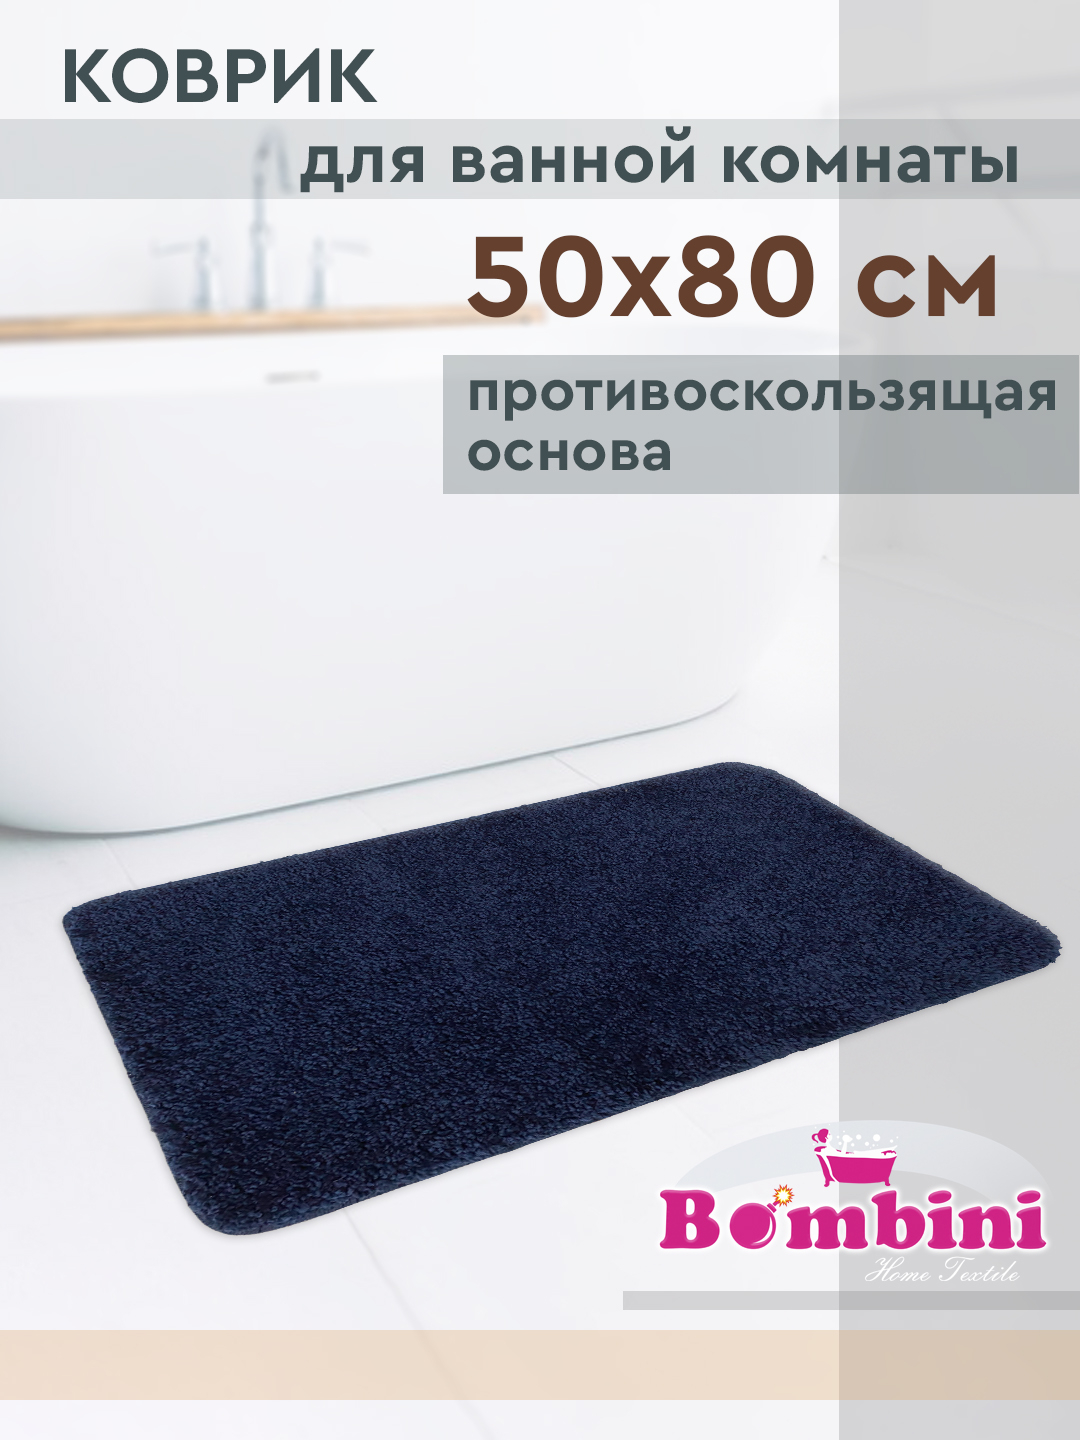 Размеры коврика для ванной комнаты 50 80